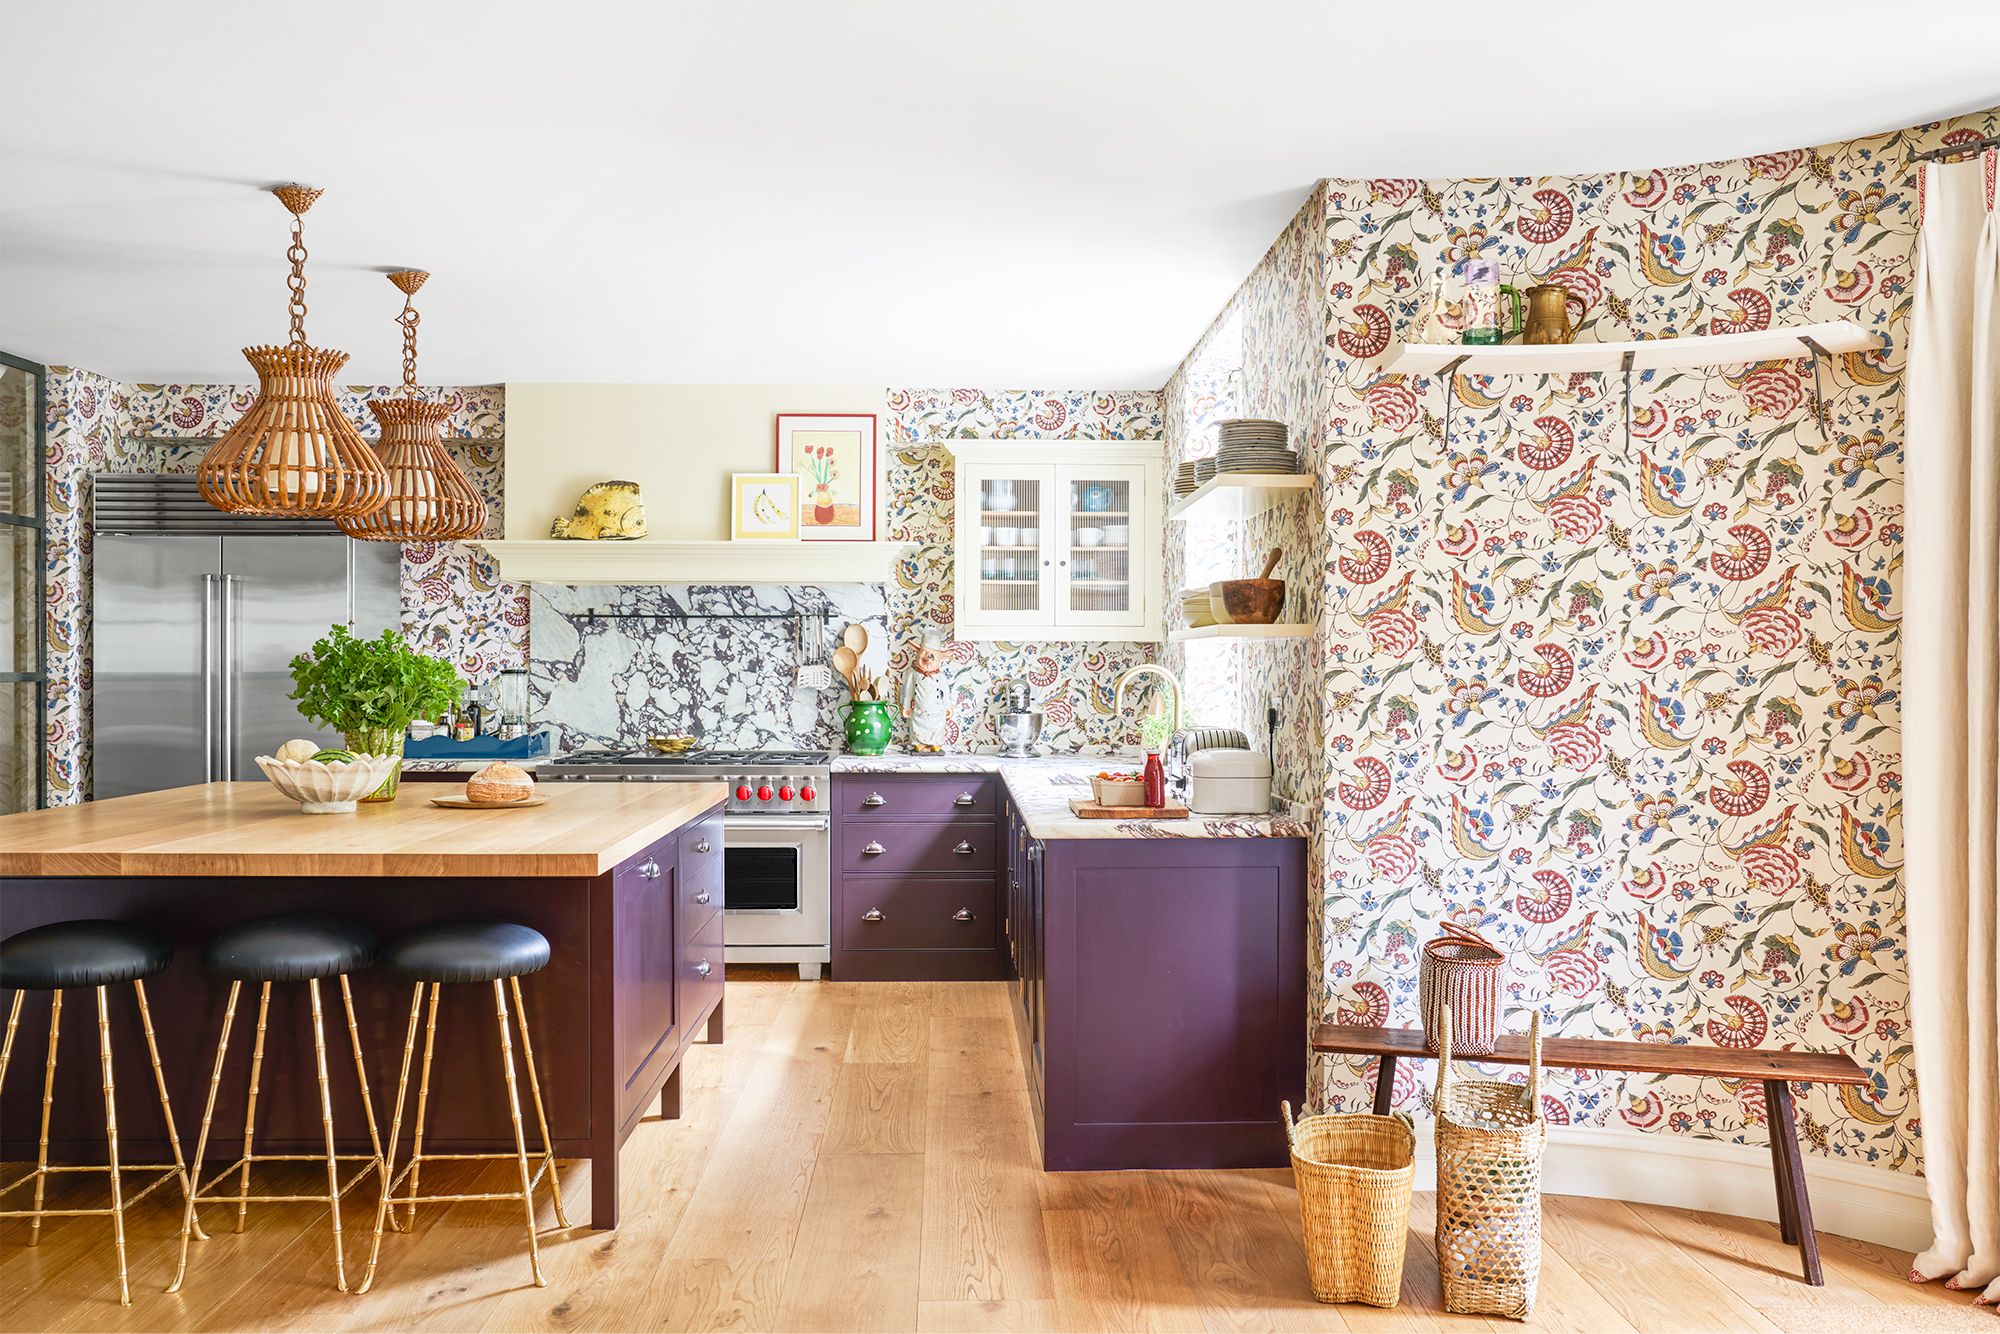 43 Best Kitchen Paint Colors Ideas, What Color Should I Paint Old Kitchen Cabinets